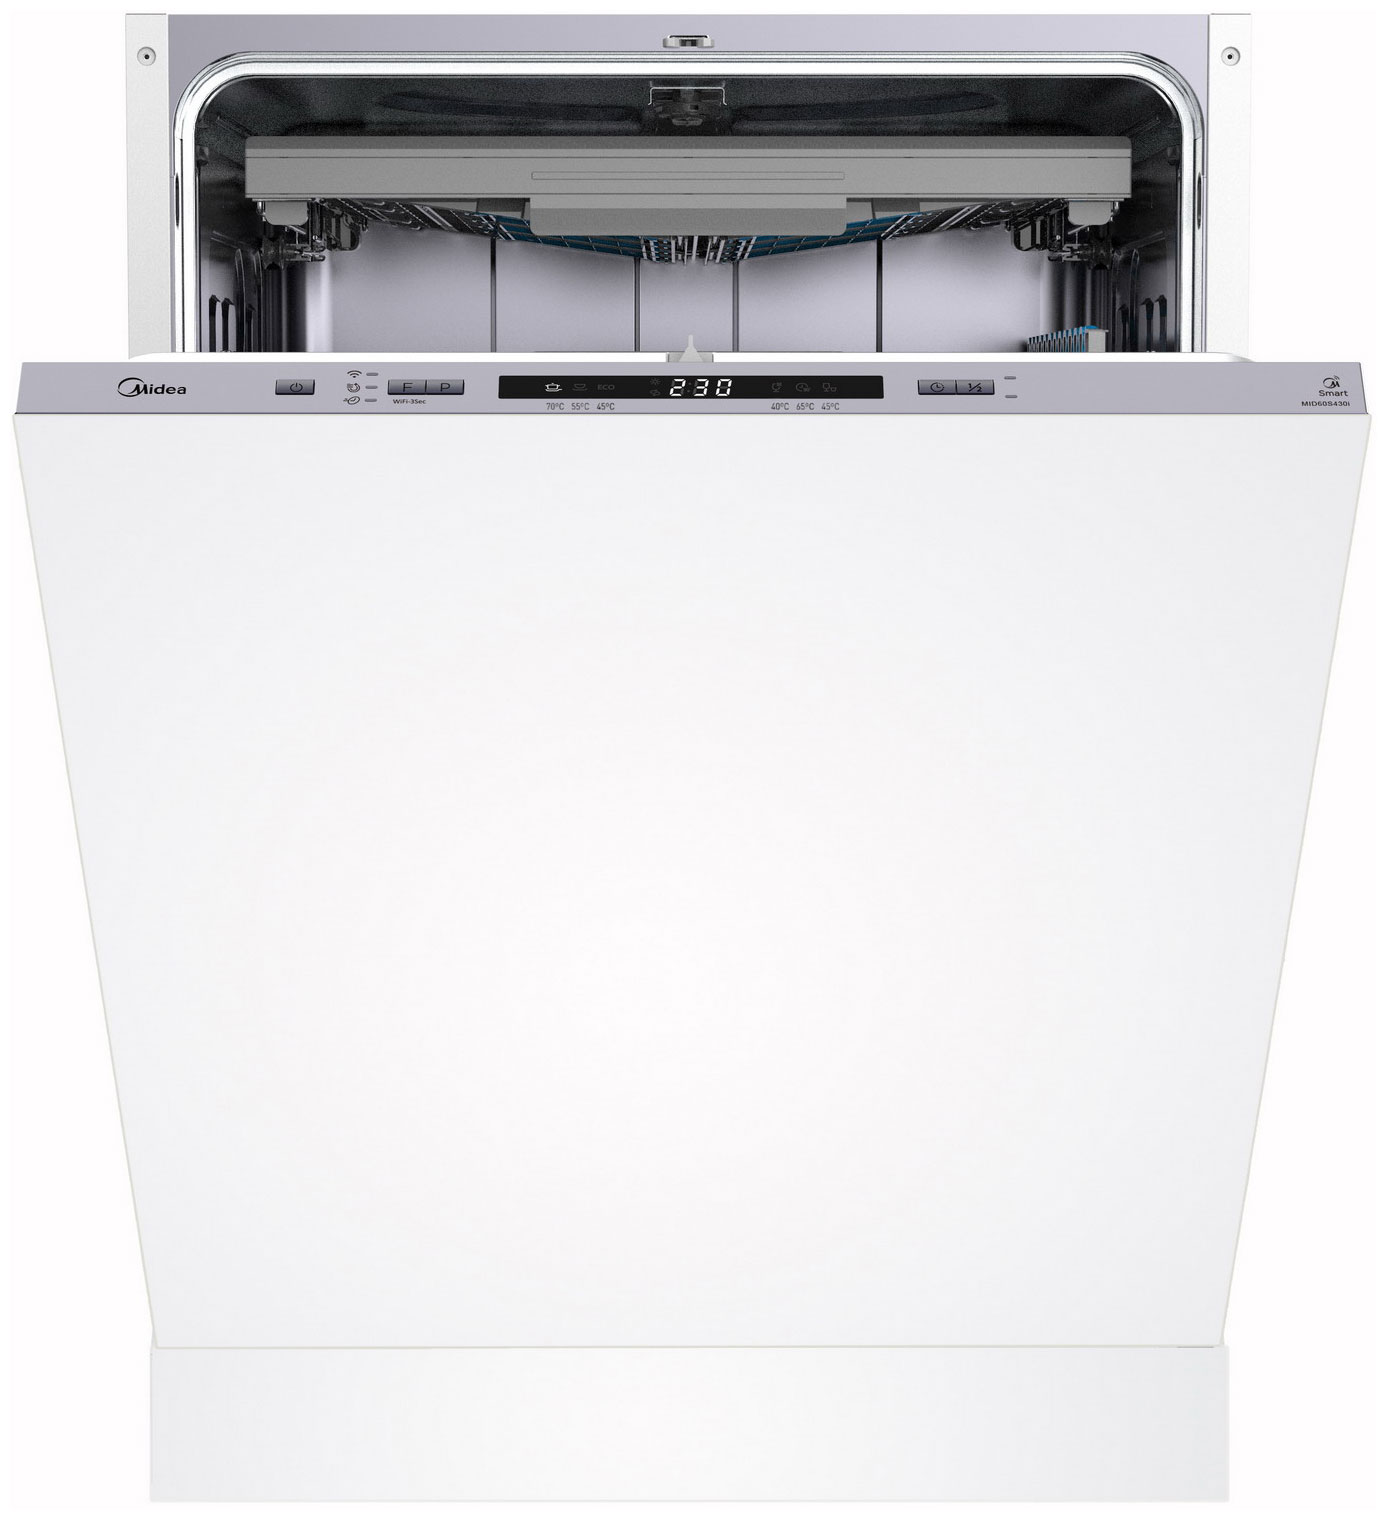 Встраиваемая посудомоечная машина Midea MID60S430i встраиваемая посудомоечная машина midea mid60s430i